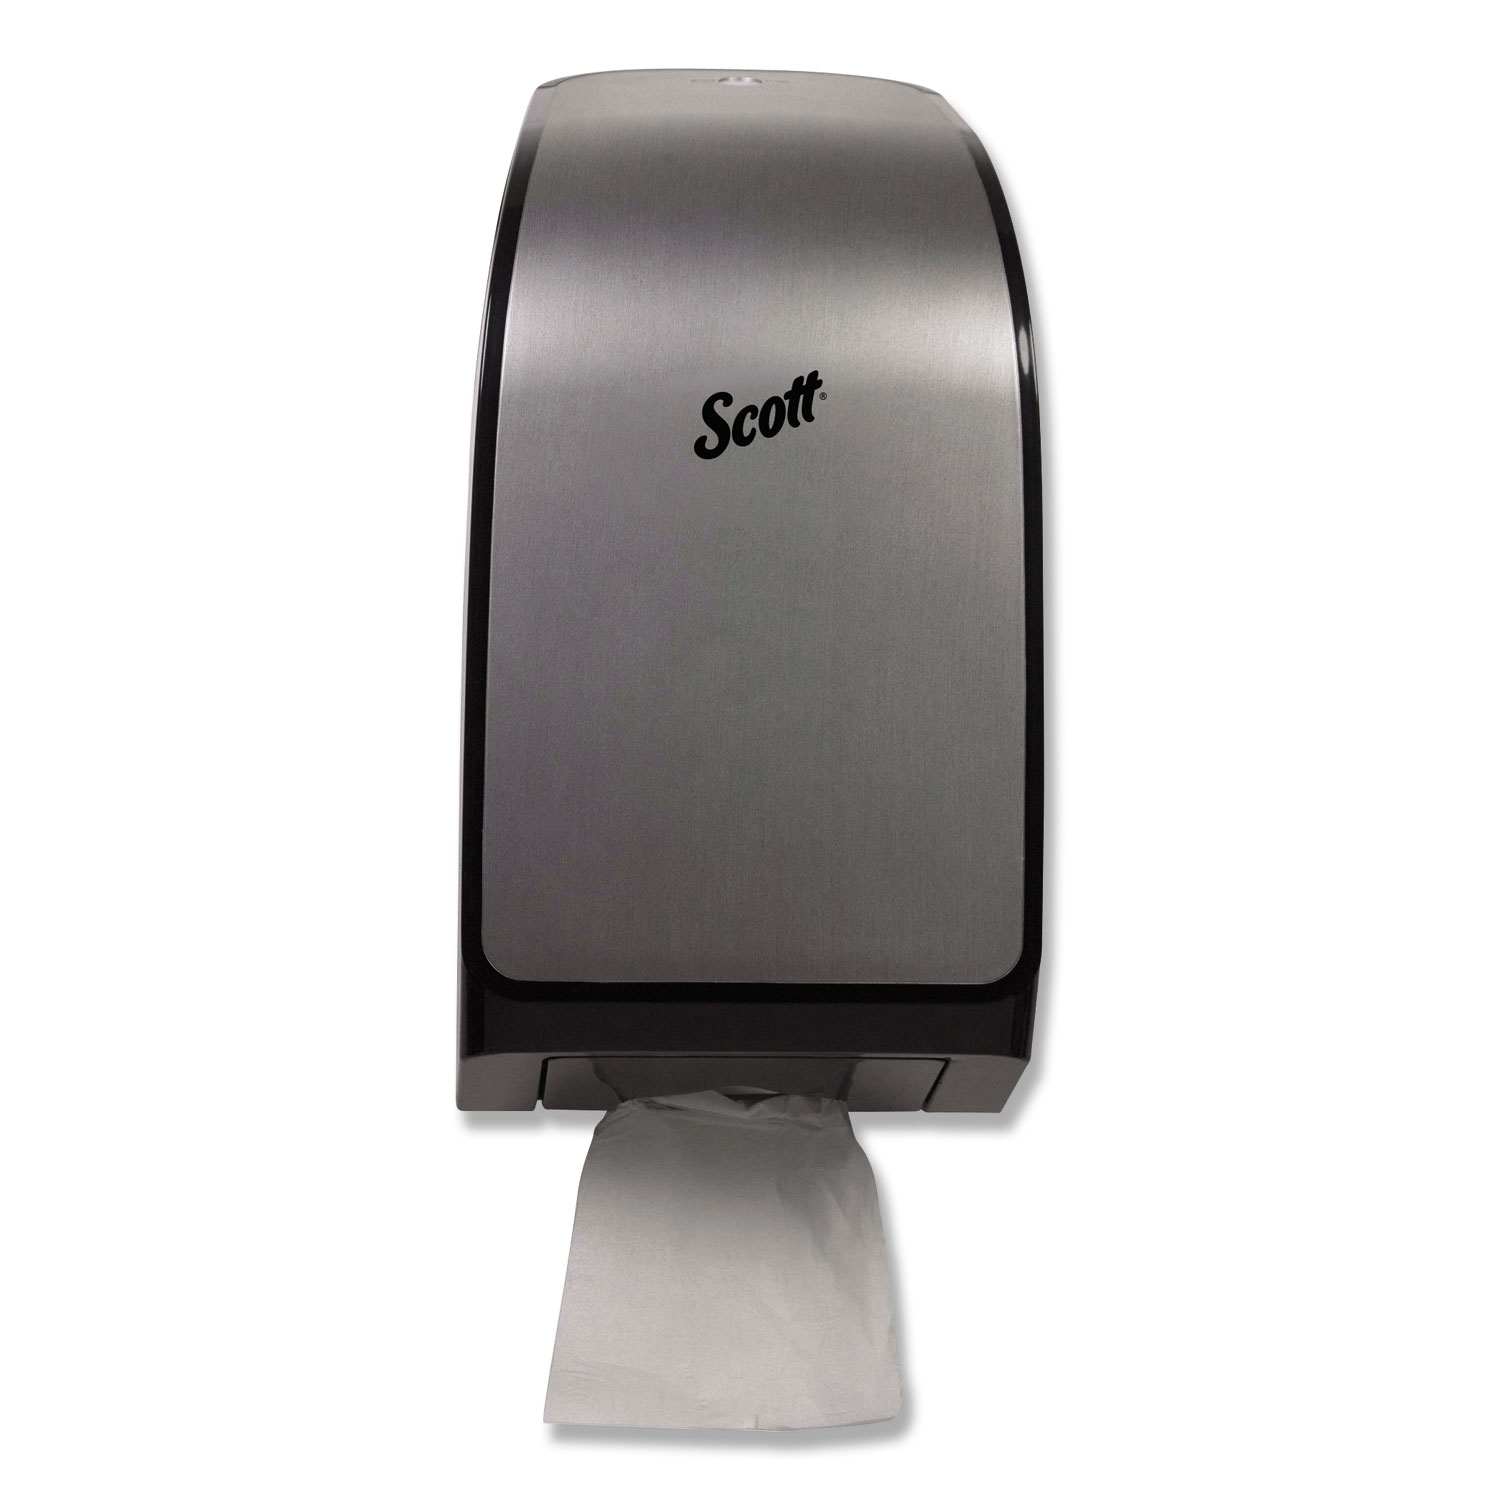  Scott 39729 Pro Coreless Jumbo Roll Tissue Dispenser, 7.37 x 14 x 6.125, Stainless (KCC39729) 